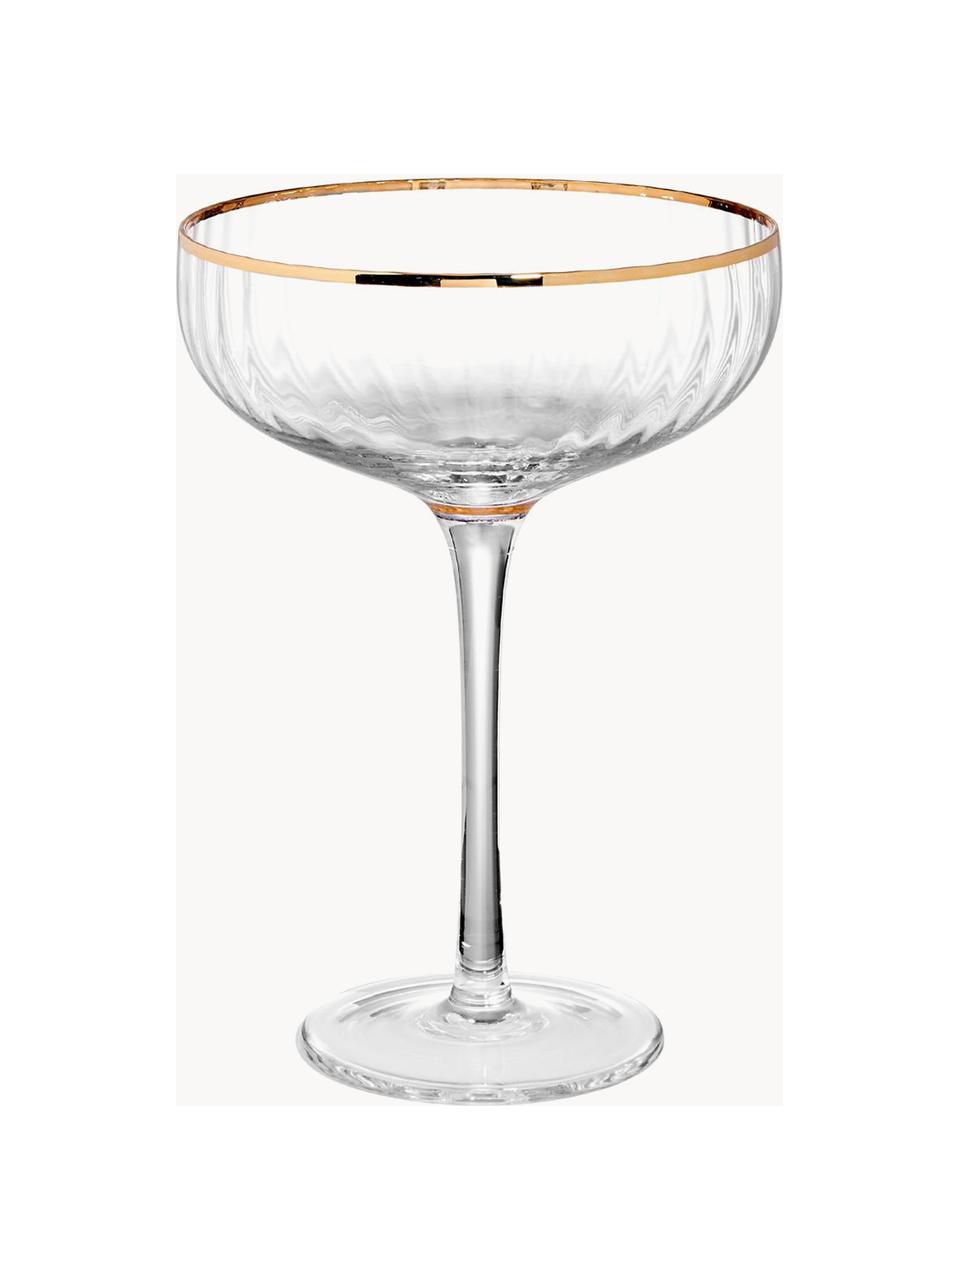 Kieliszek do szampana Golden Twenties, 2 szt., Szkło, Transparentny z krawędzią w odcieniu złota, Ø 13 x W 19 cm, 400 ml